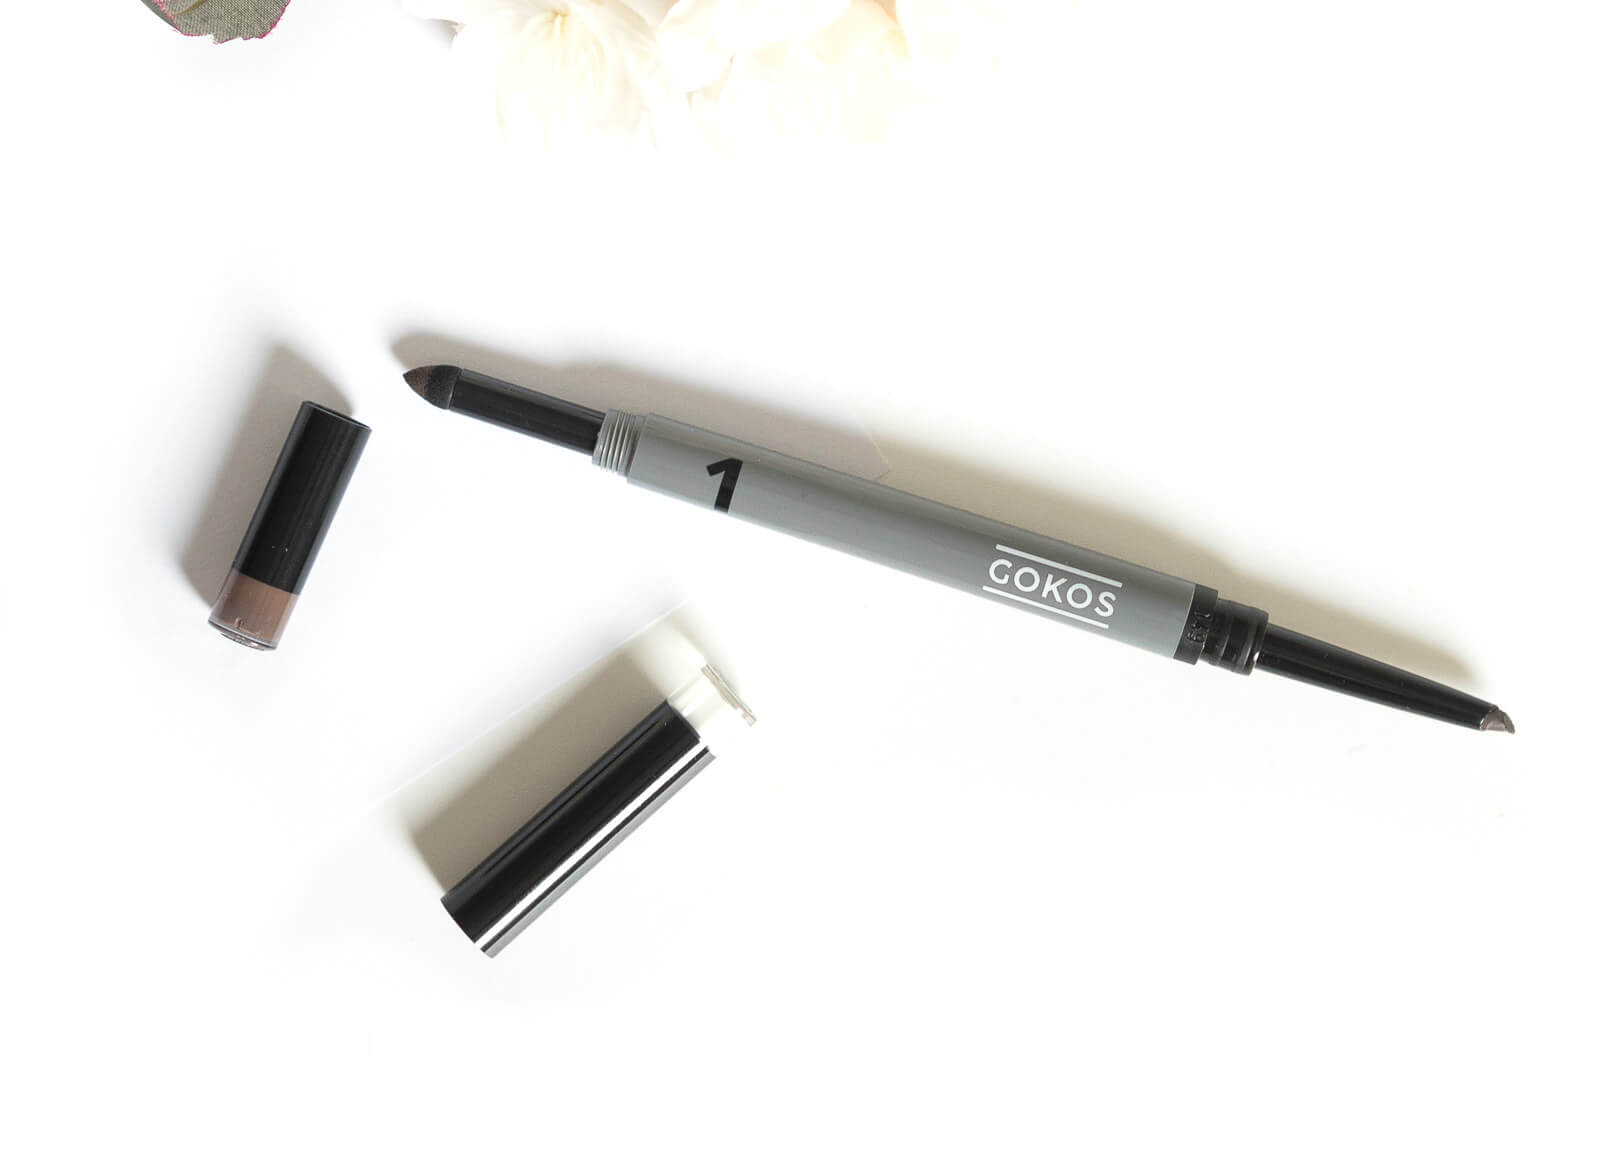 GOKOS - Beauty to go - Indie-Makeup-Brand mit Stiften 130